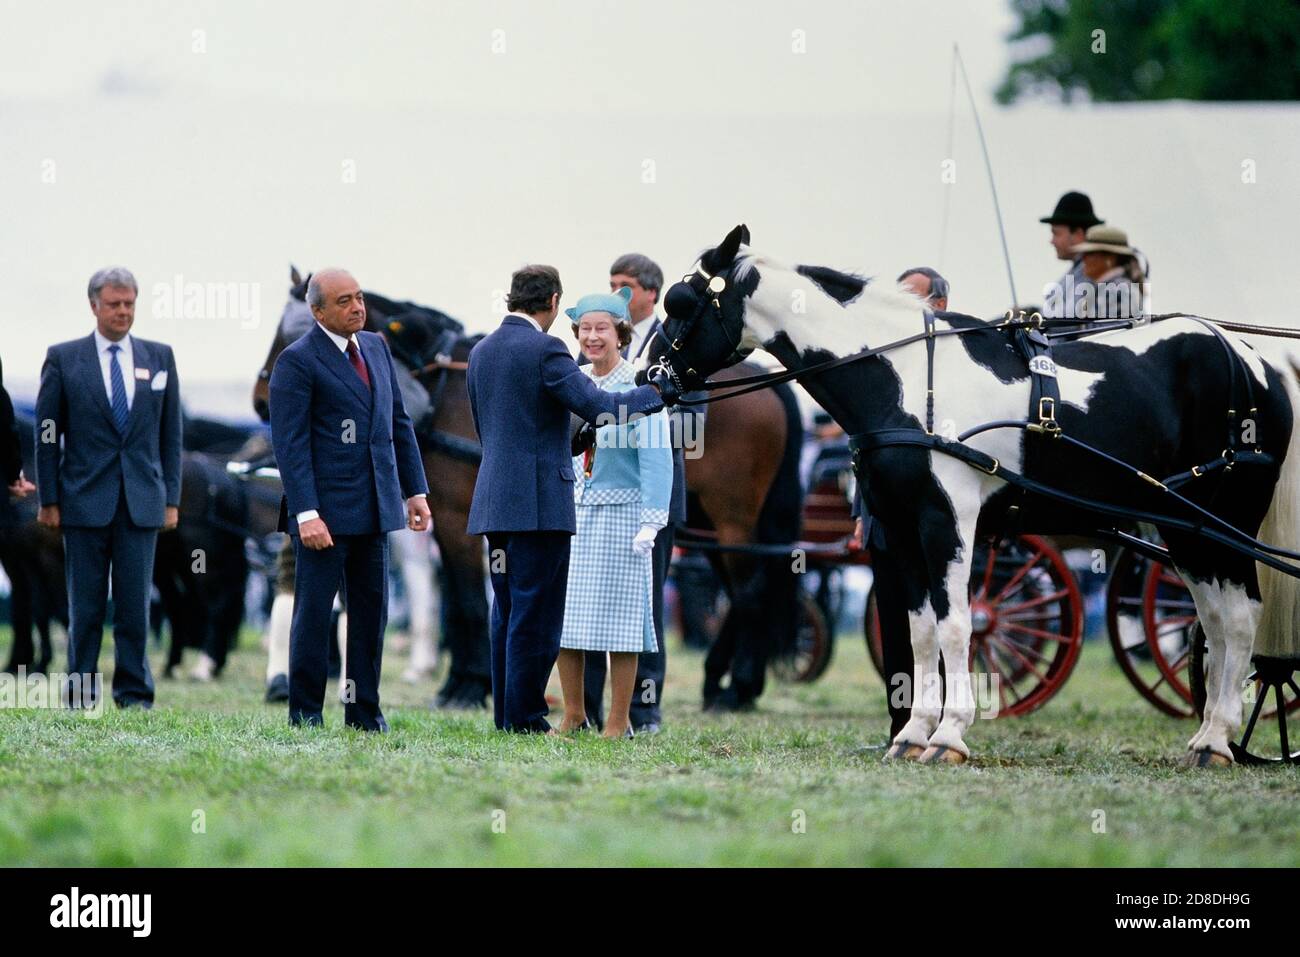 Une reine Elizabeth II souriante présentant des prix au spectacle de chevaux Winmor en compagnie de l'un des sponsors du spectacle, Mohammed Al Fayed, du magasin Harrods. M. Al-Fayed est le père de Dodi Al-Fayed. The Royal Windsor Horse Show, Berkshire, Angleterre, Royaume-Uni. 14 mai 1989 Banque D'Images